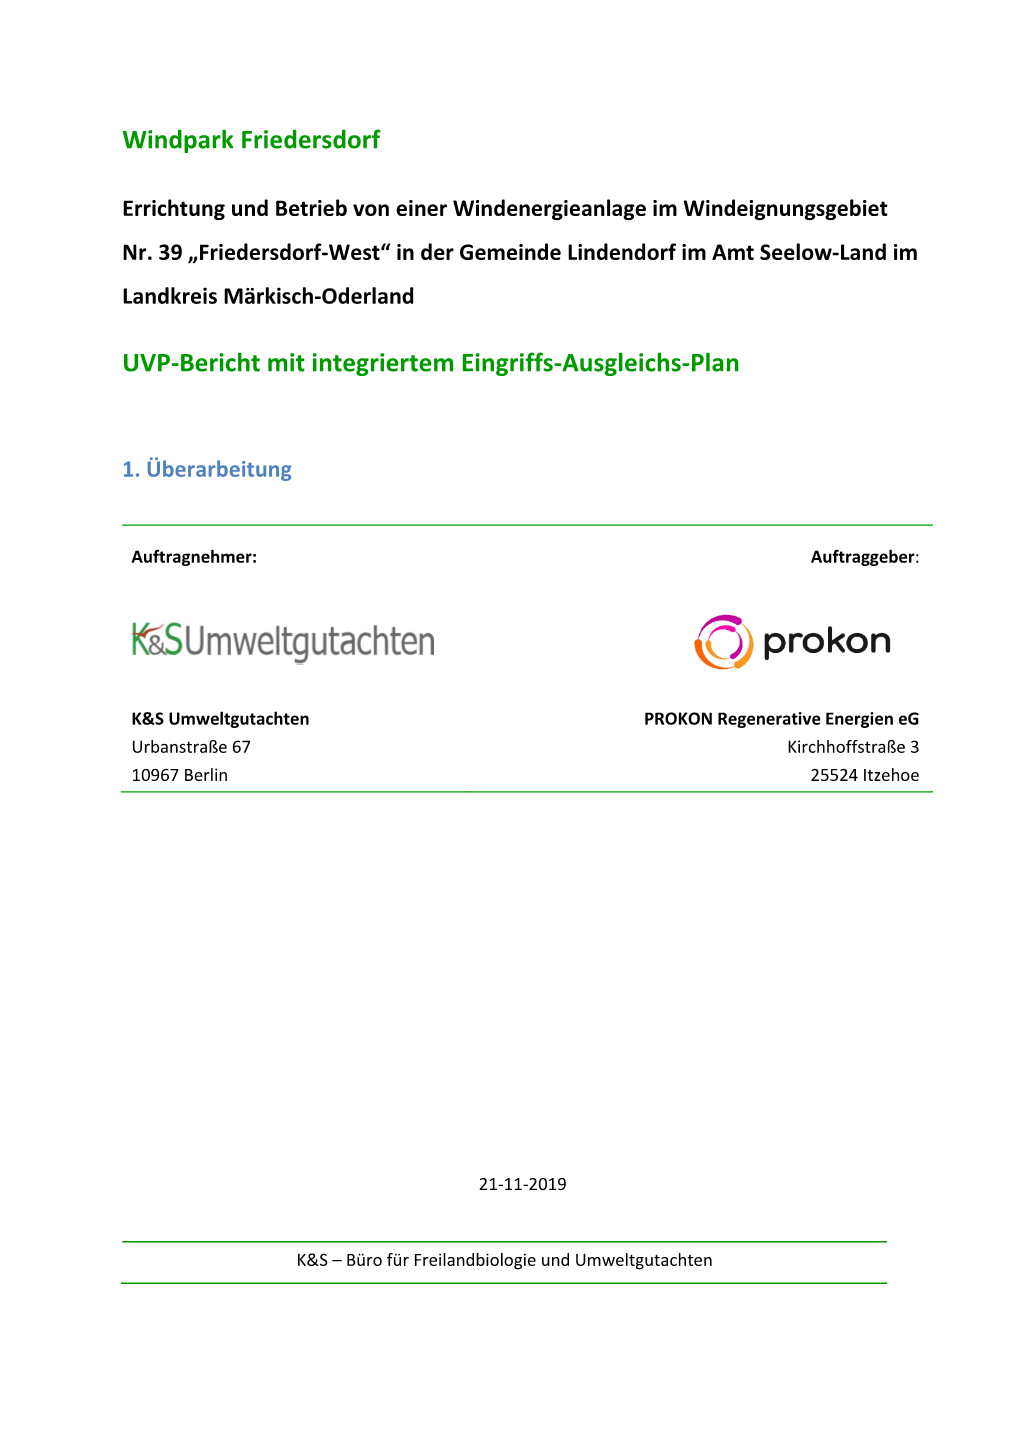 Windpark Friedersdorf UVP-Bericht Mit Integriertem Eingriffs-Ausgleichs